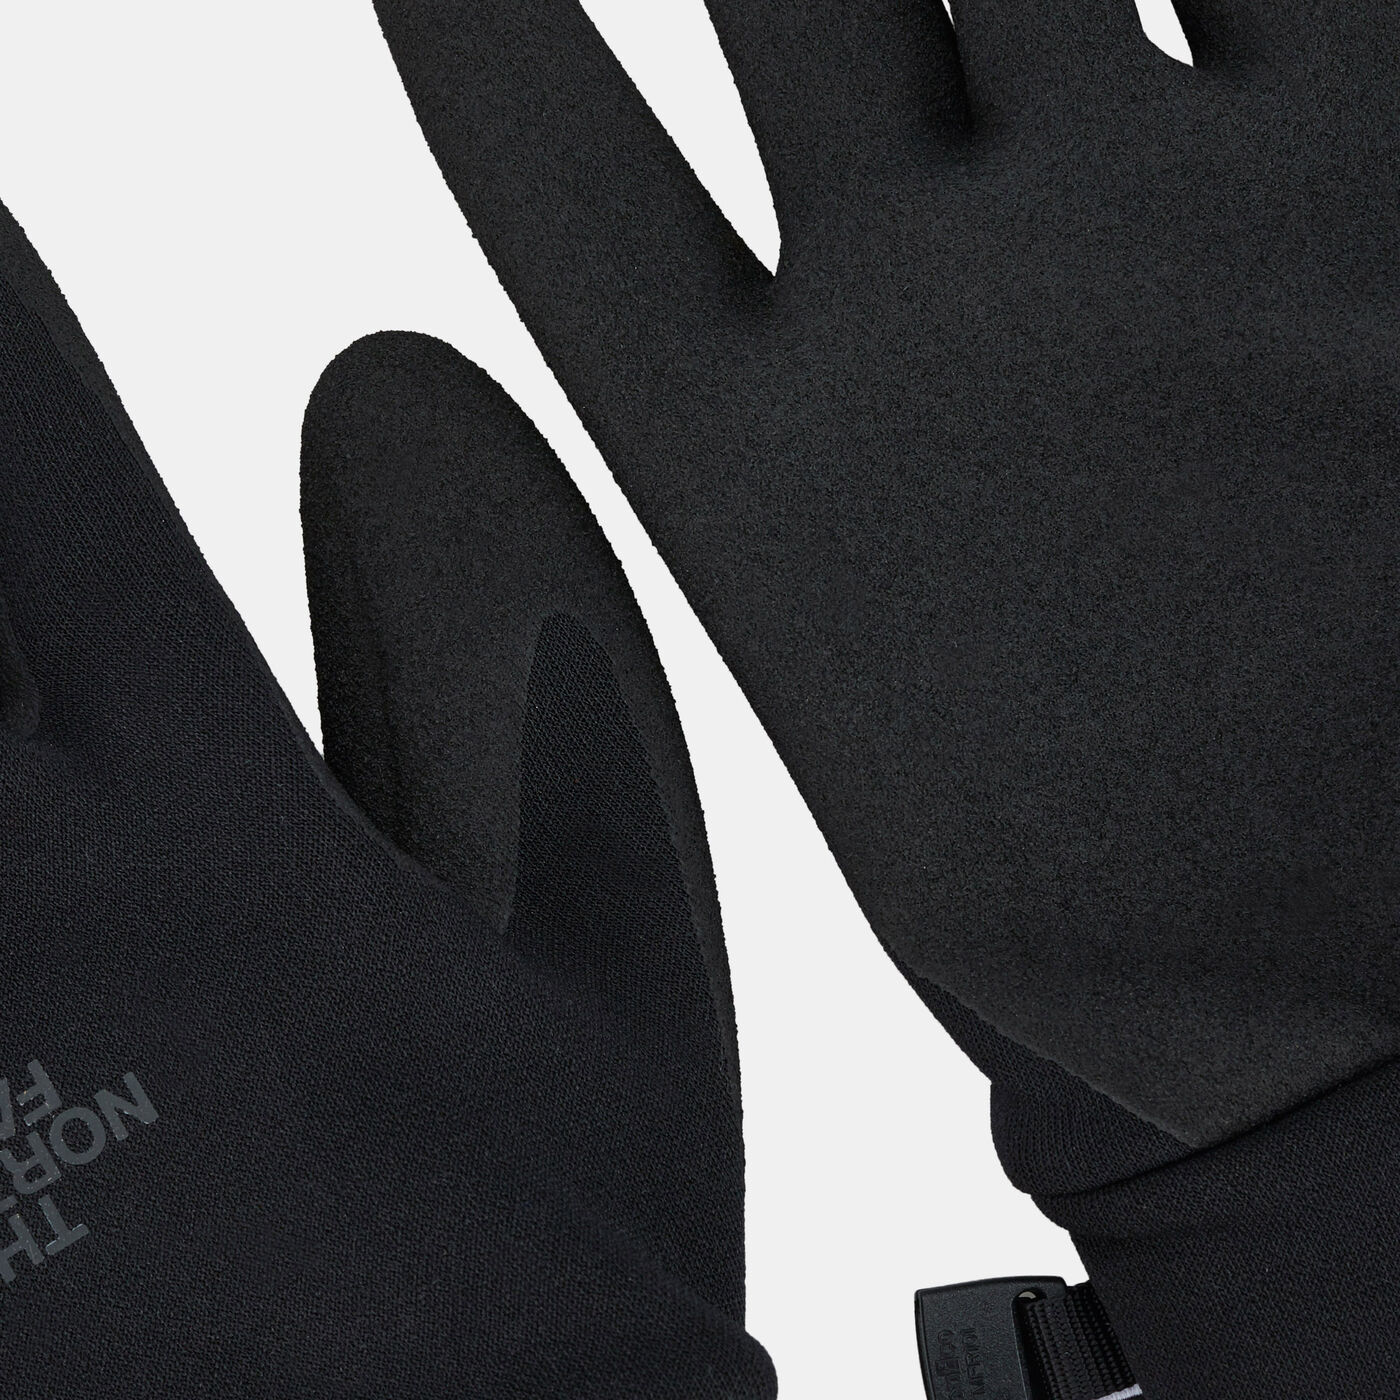 Women's Etip Grip Gloves